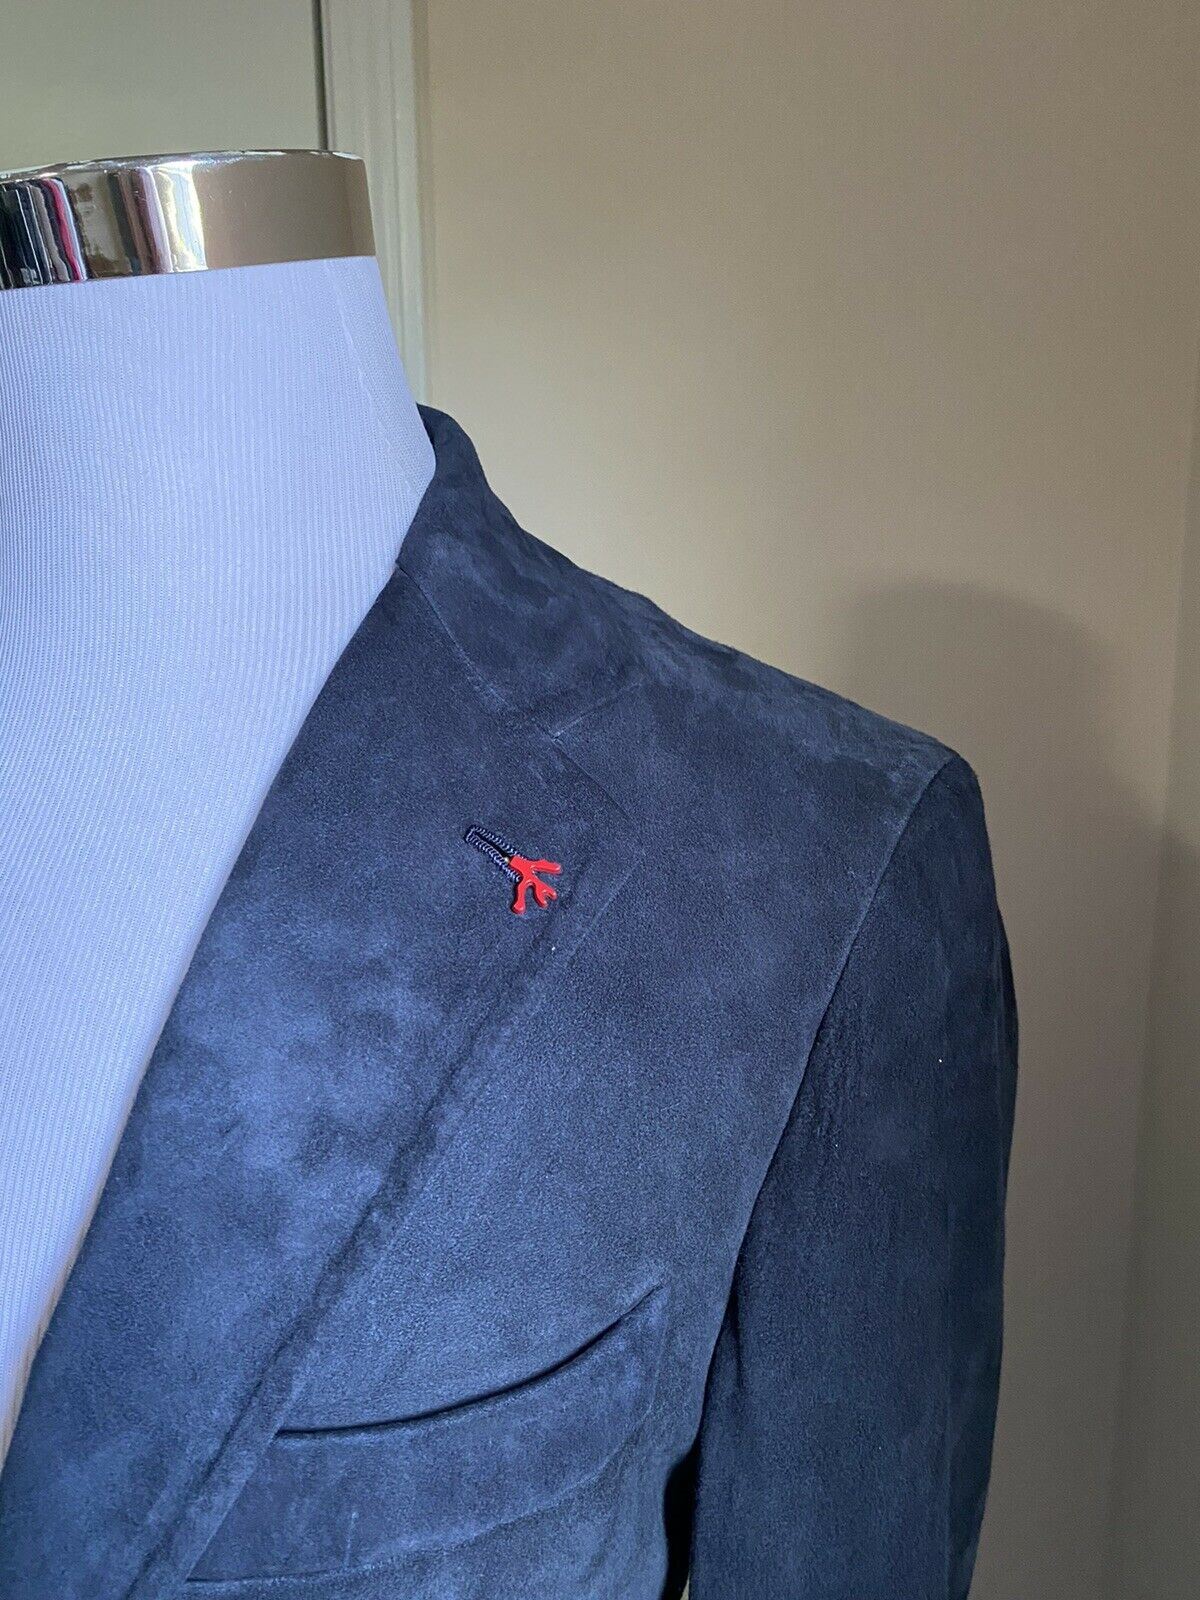 NWT $4995 Isaia Мужской шелковый замшевый пиджак Спортивное пальто Темно-синее 42R US/52R EU